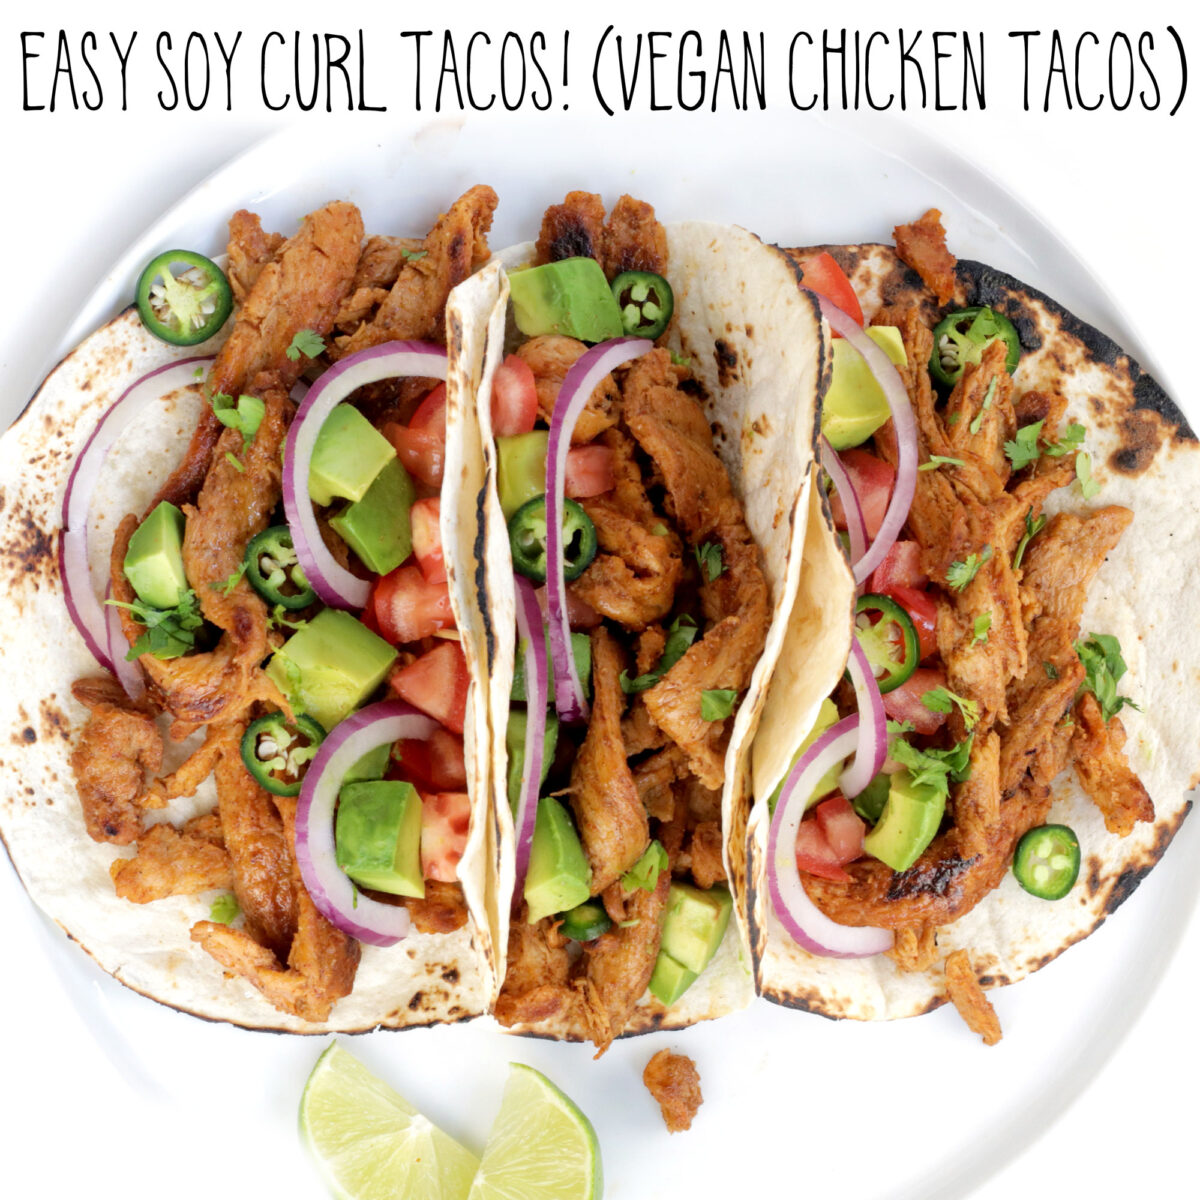 Easy Soy Curl Tacos! (Vegan Chicken Tacos)